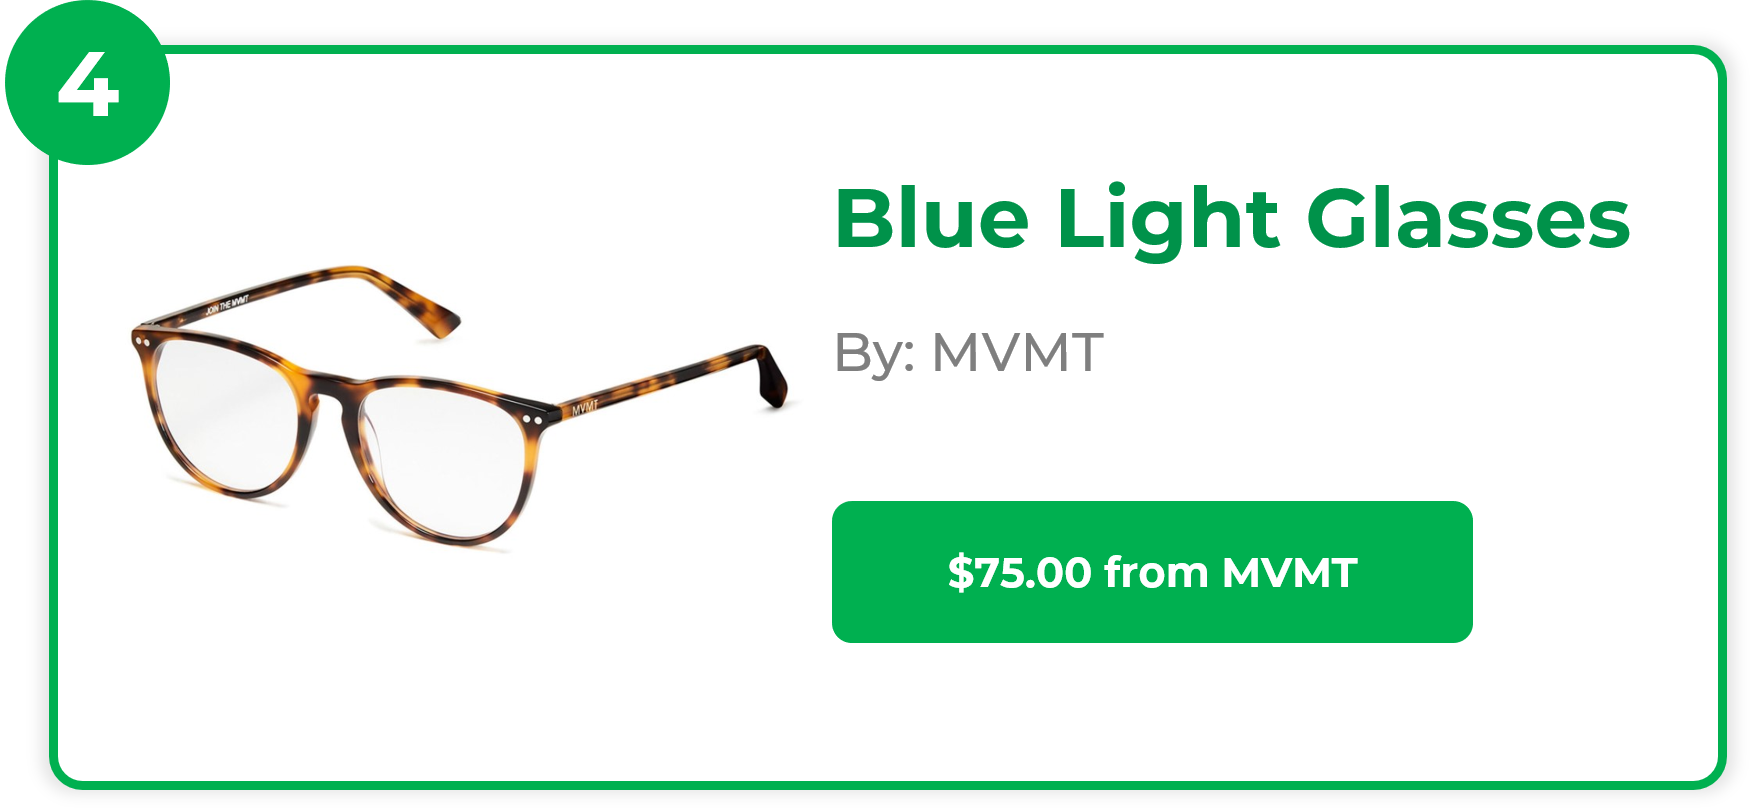 Blue Light Glasses - MVMT